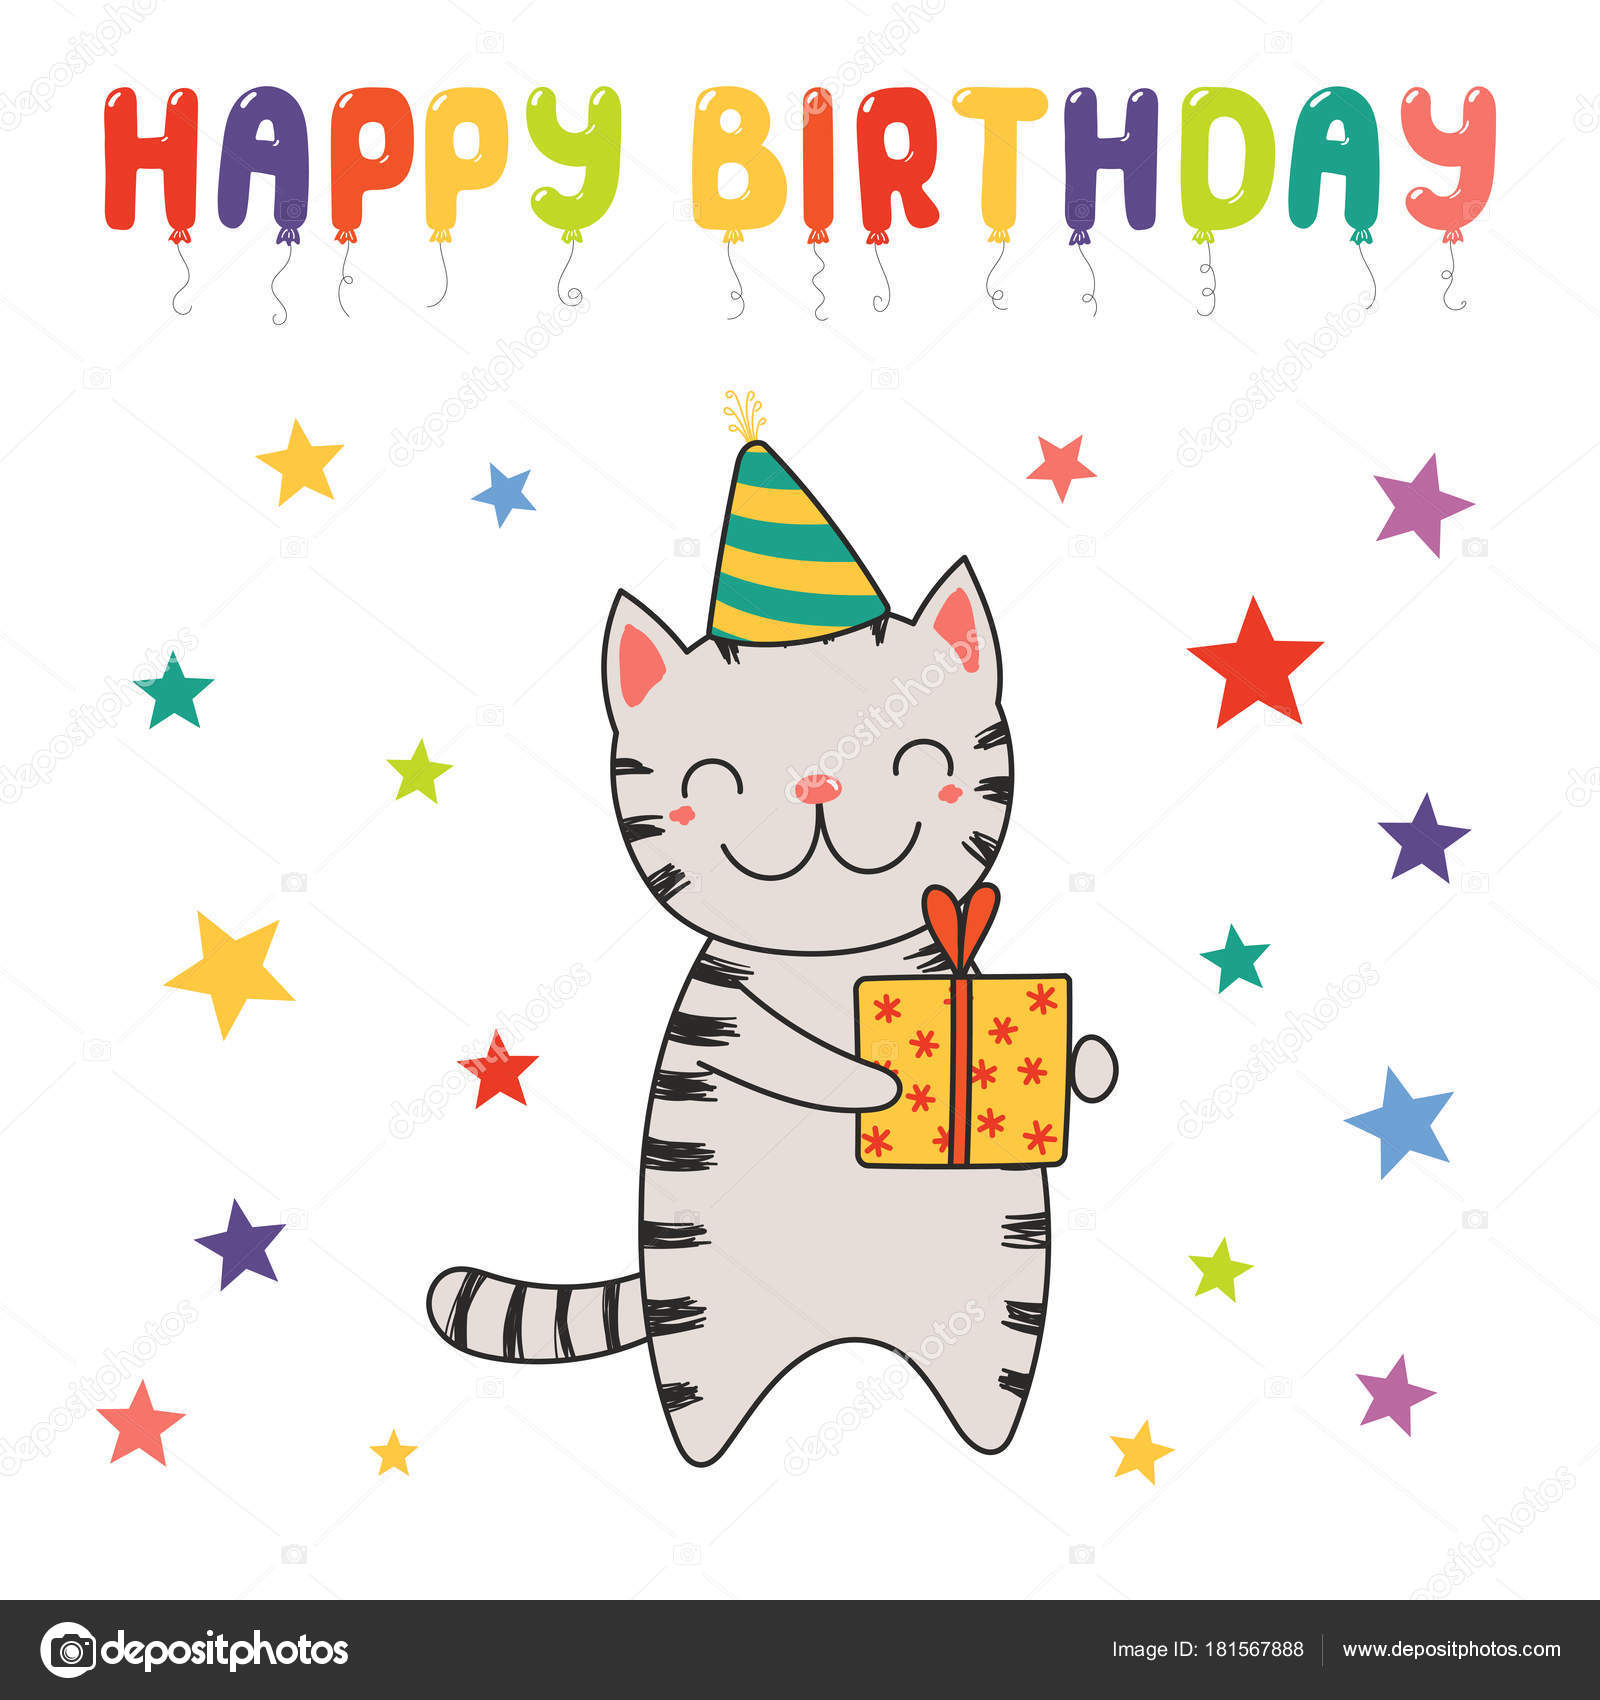 Happy Birthday Greeting Card Hand Drawn Cute Funny Cartoon